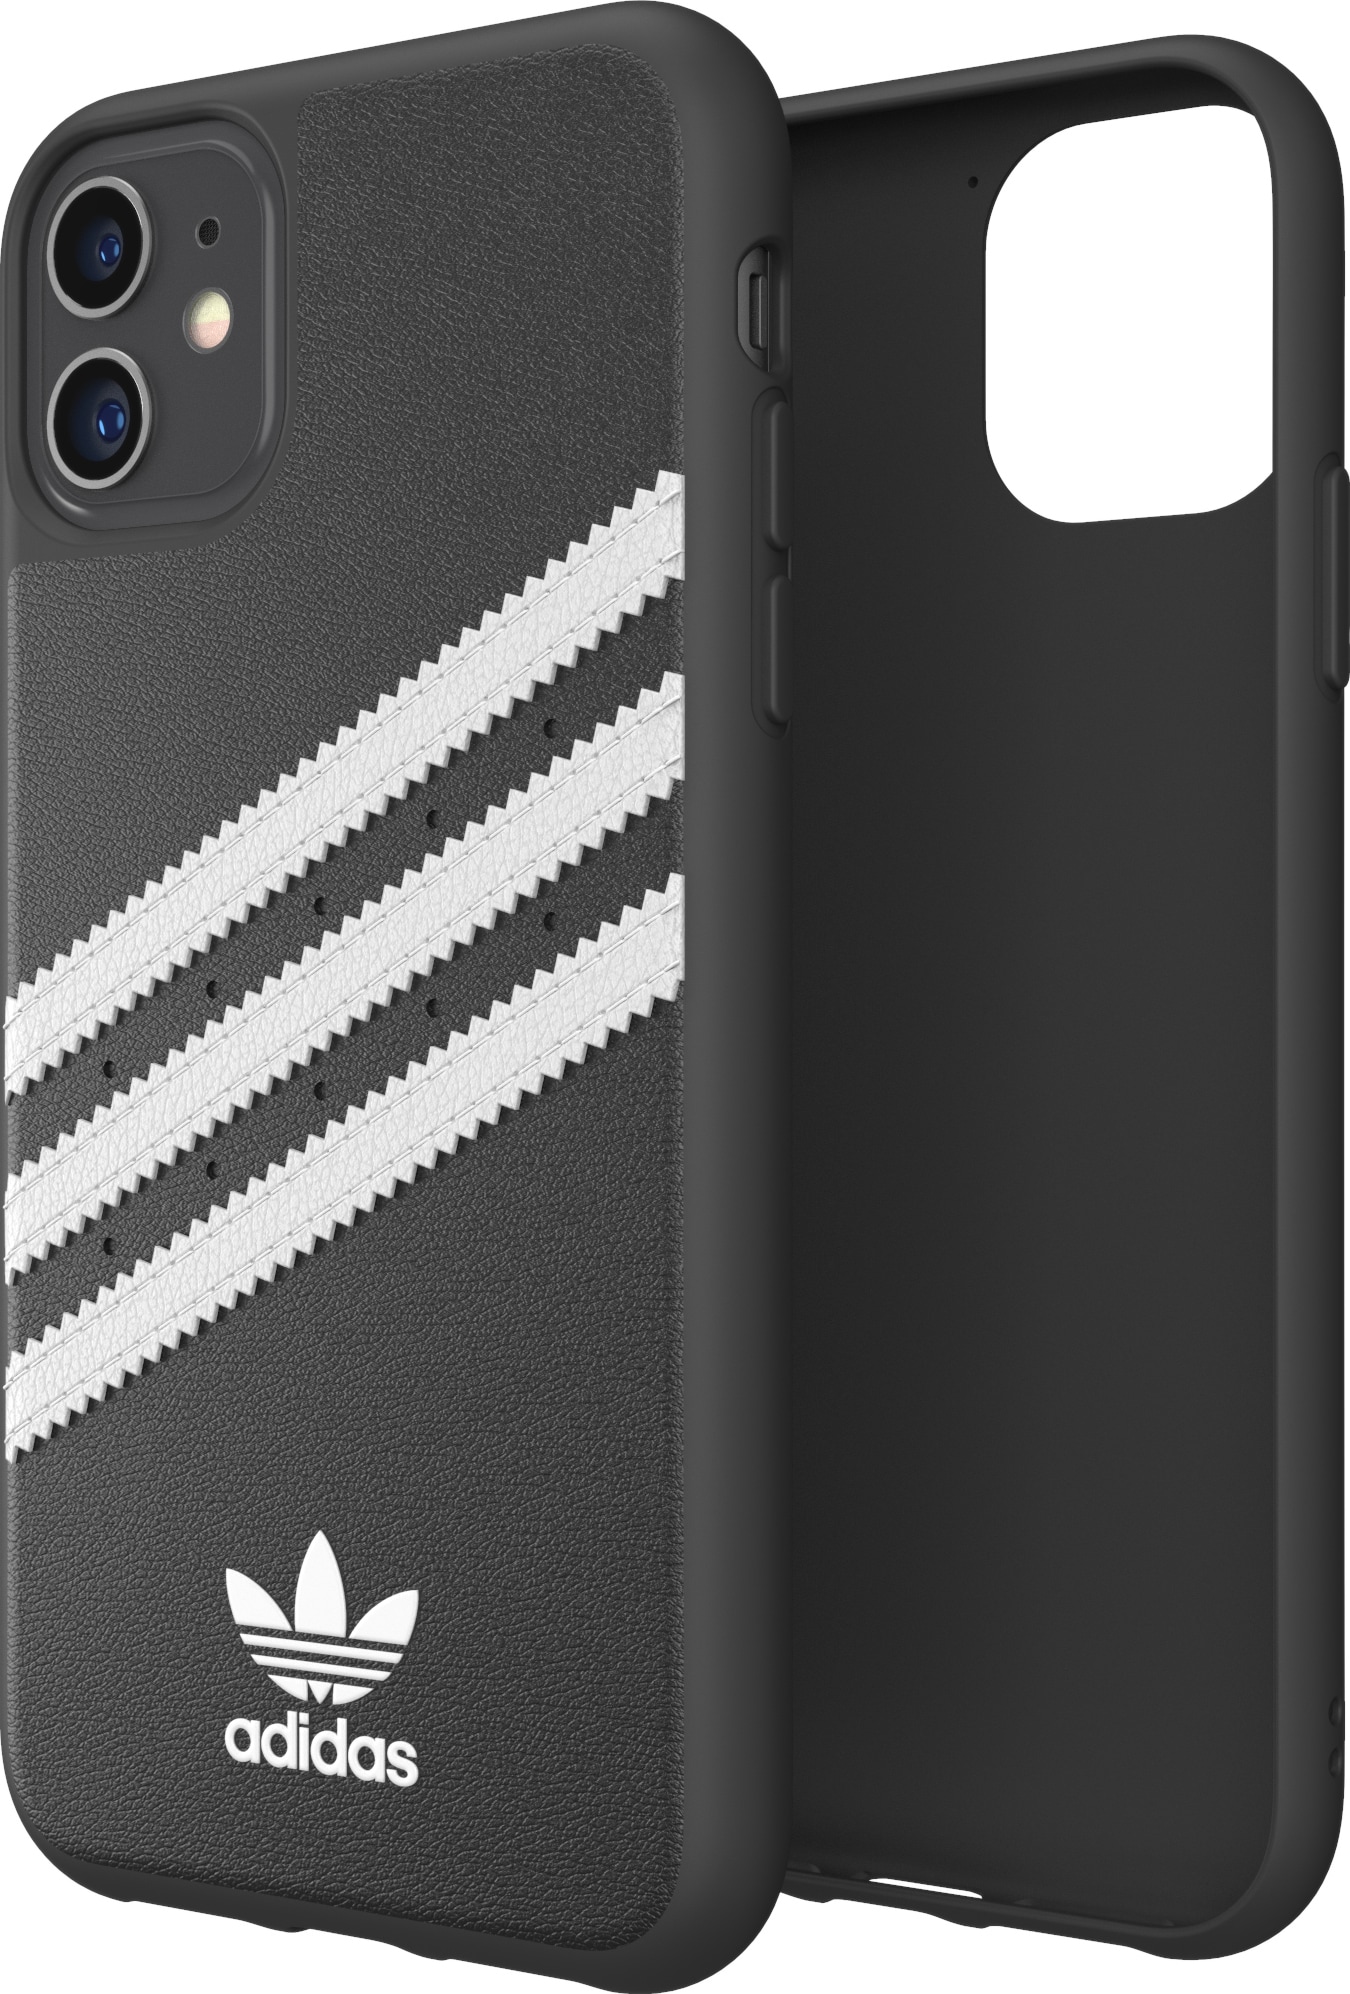 Adidas PU iPhone 11 suojakuori (musta/valkoinen) - Gigantti verkkokauppa